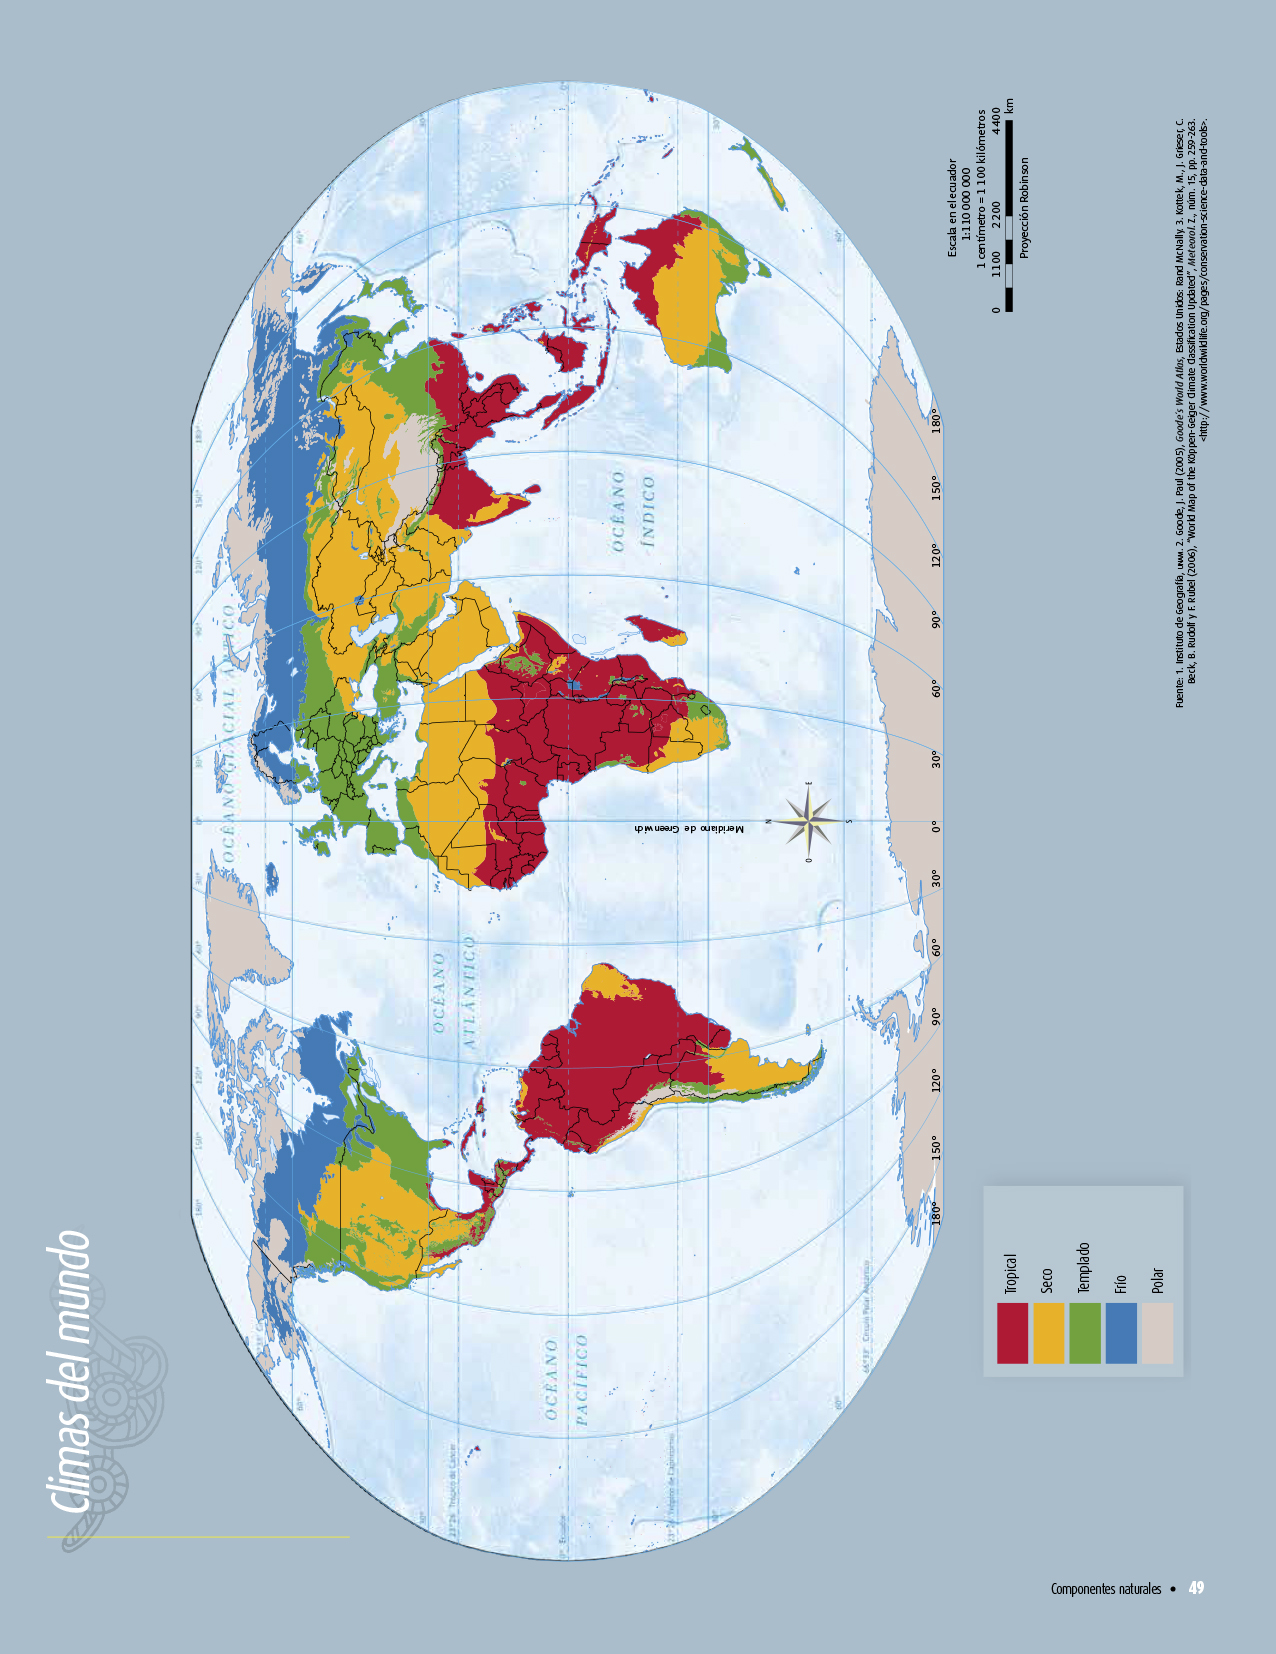 Atlas de geografía del mundo quinto grado 2017-2018 - Página 49 de 122 - Libros de Texto Online